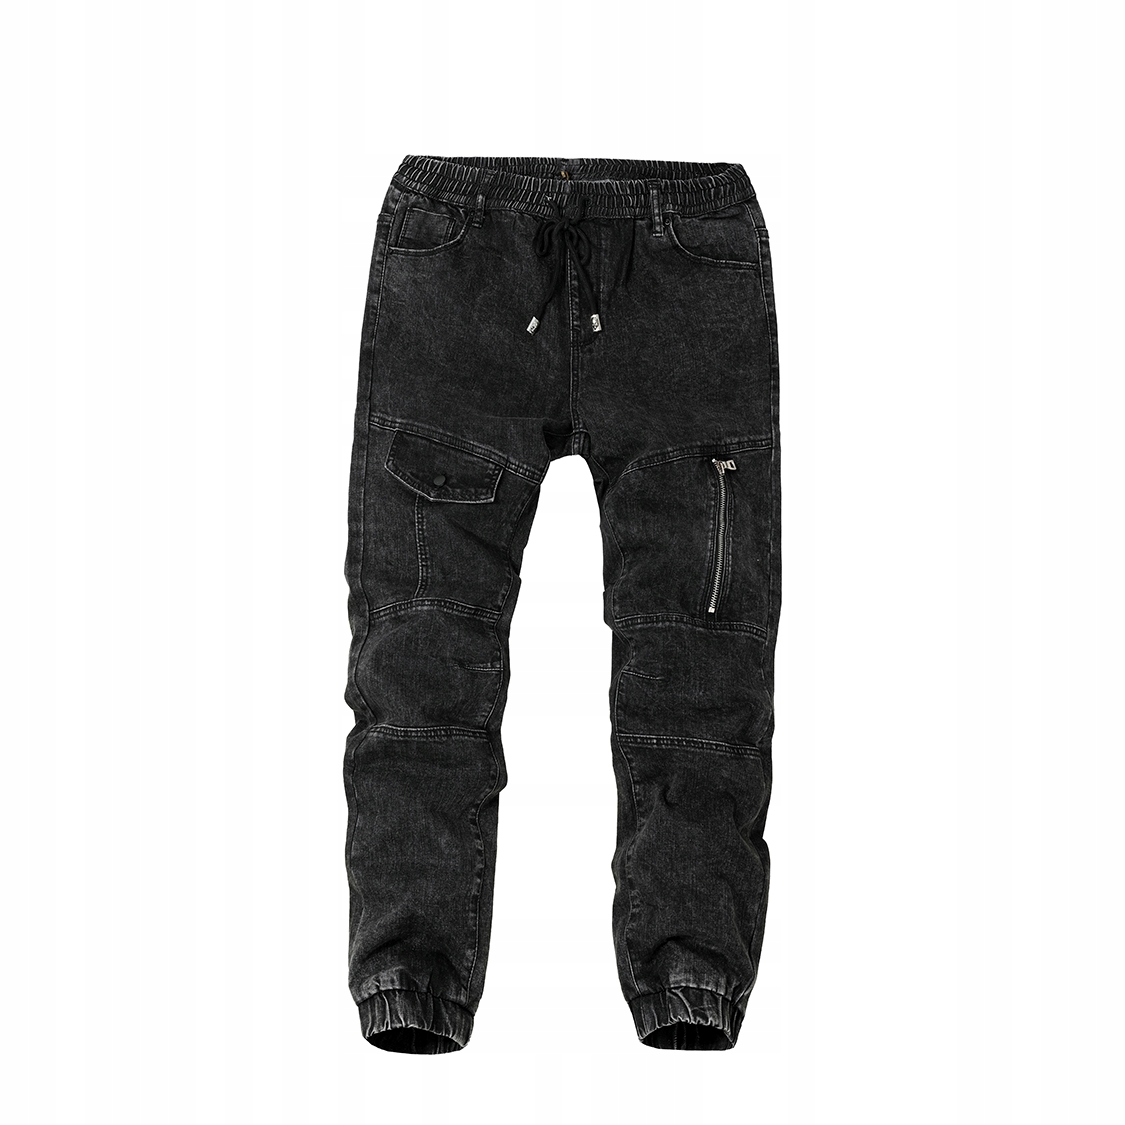 Čierne pánske džínsové nohavice joggery s gumou - M